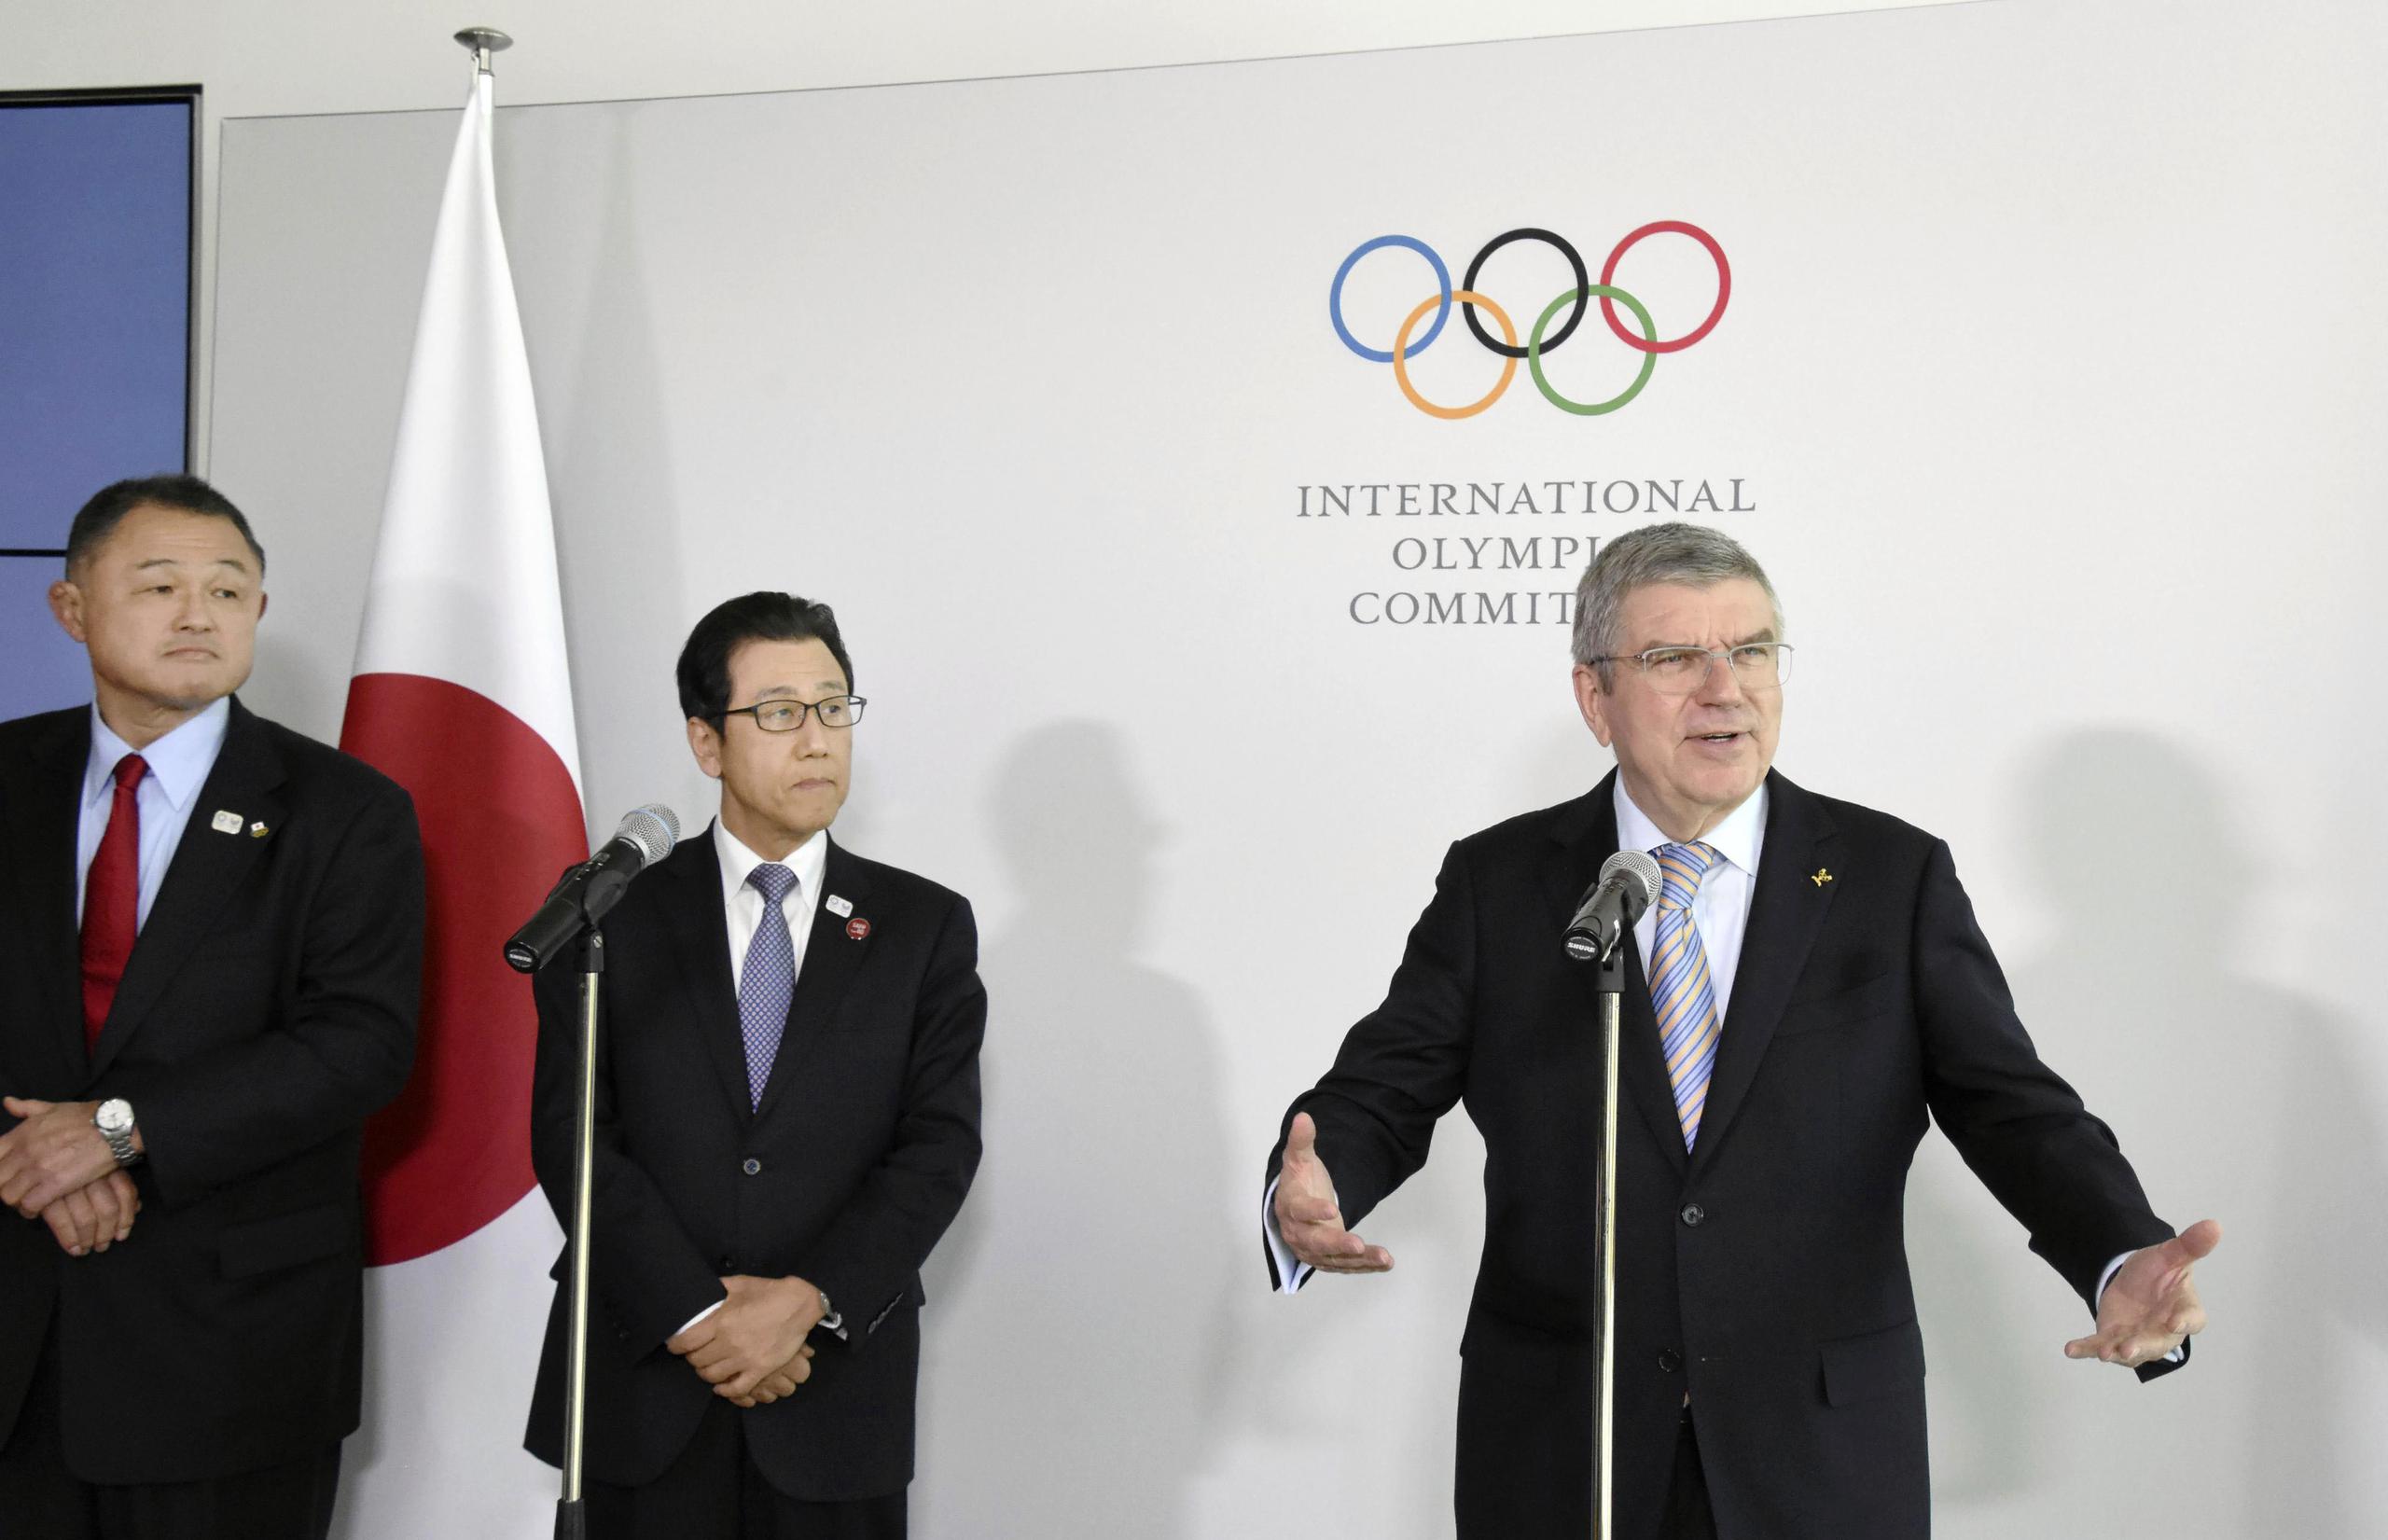 El presidente del Comité Olímpicos de Japón, Yasuhiro Yamashita, y el alcalde de Sapporo, Katsuhiro Akimoto, escuchan al presidente del COI, Thomas Bach, durante una conferencia de prensa en Lausana, Suiza el 11 de enero del 2020.